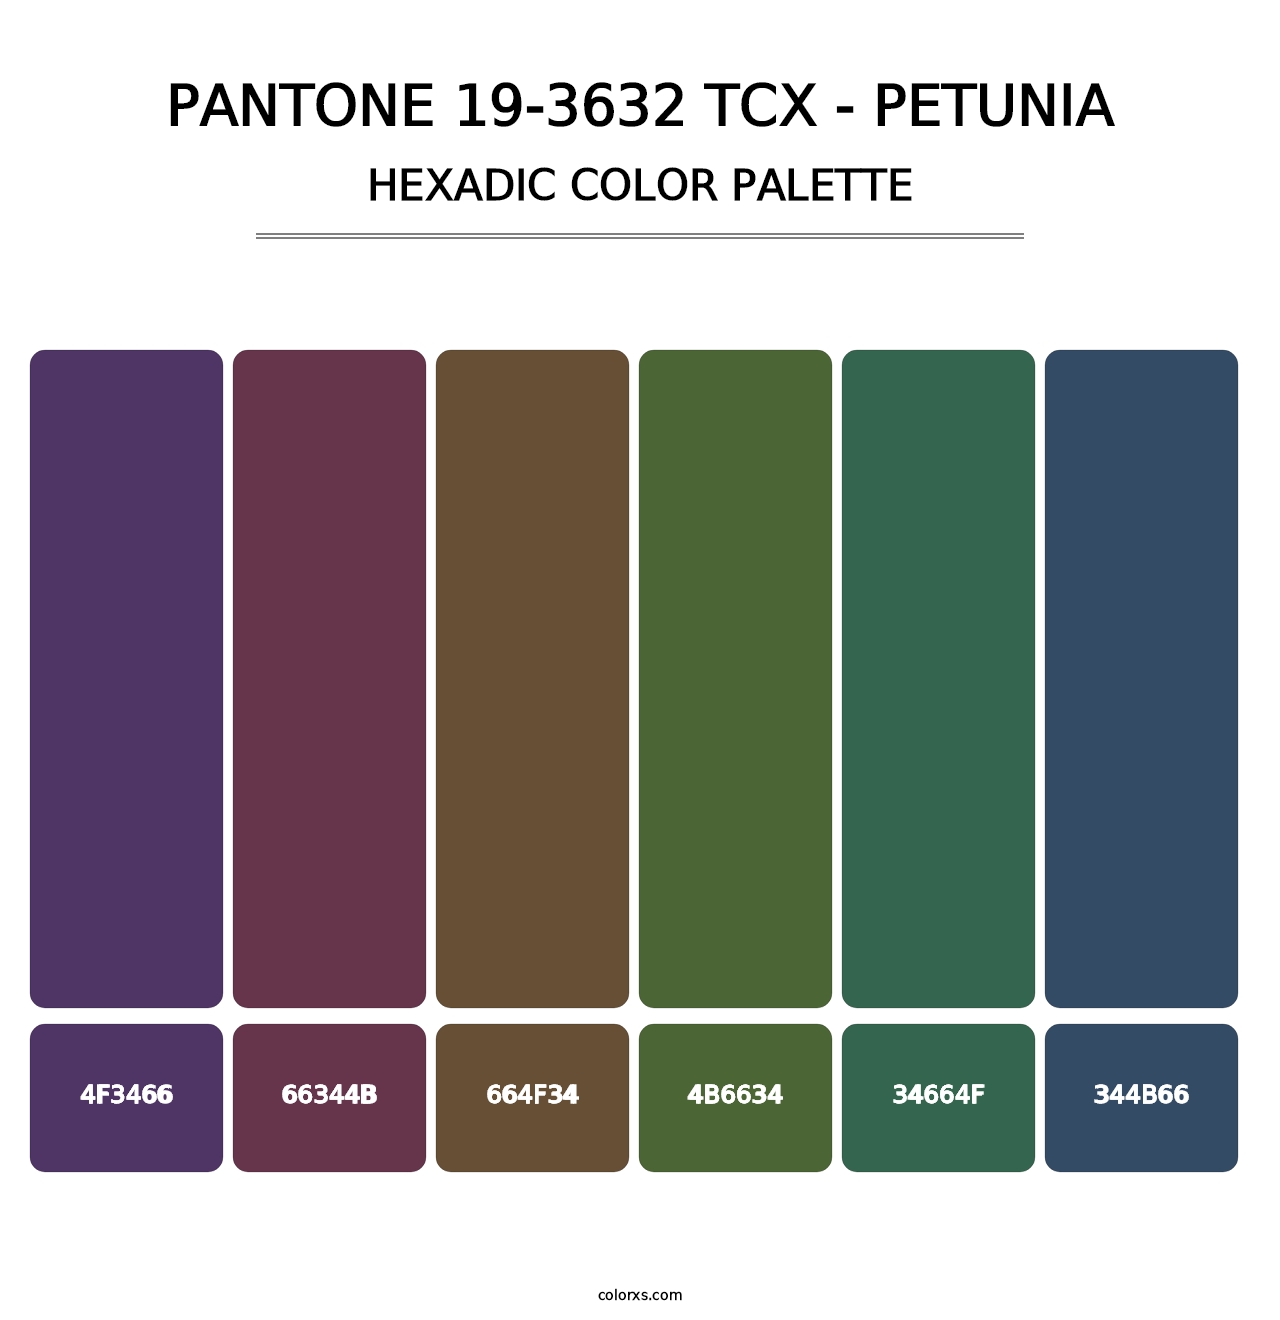 PANTONE 19-3632 TCX - Petunia - Hexadic Color Palette